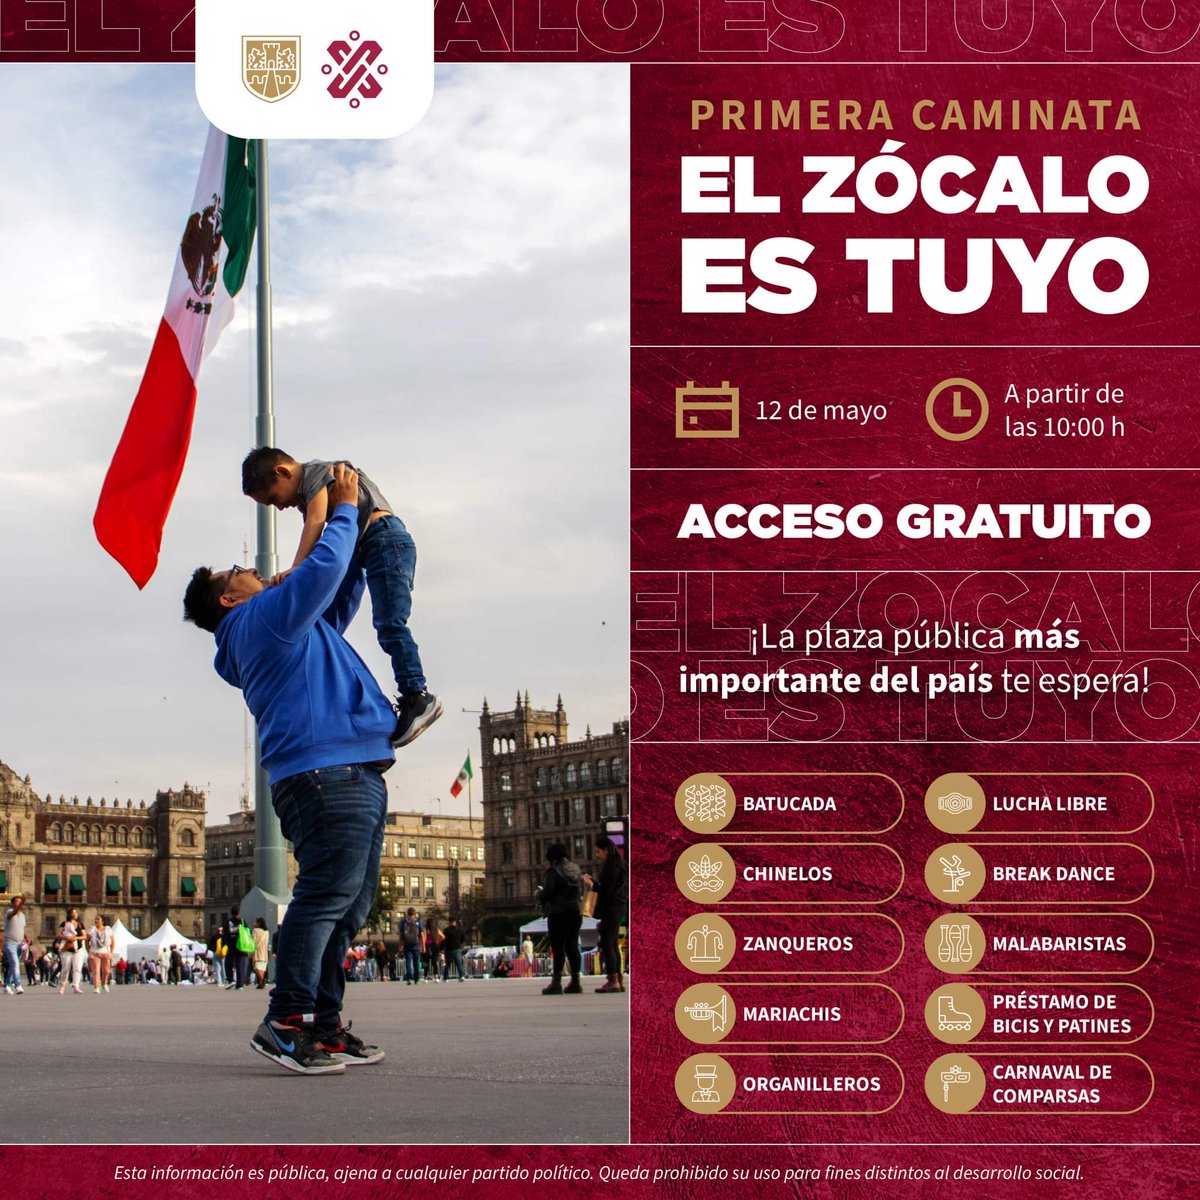 ¡Este domingo, la fiesta es en el Zócalo! 🎉 ¡Y la comunidad #PILARES estará presente! Súmate a la Primera Caminata #ElZócaloEsTuyo para celebrar la peatonalización de nuestra plaza más icónica. 🚶‍♀🚶🇲🇽